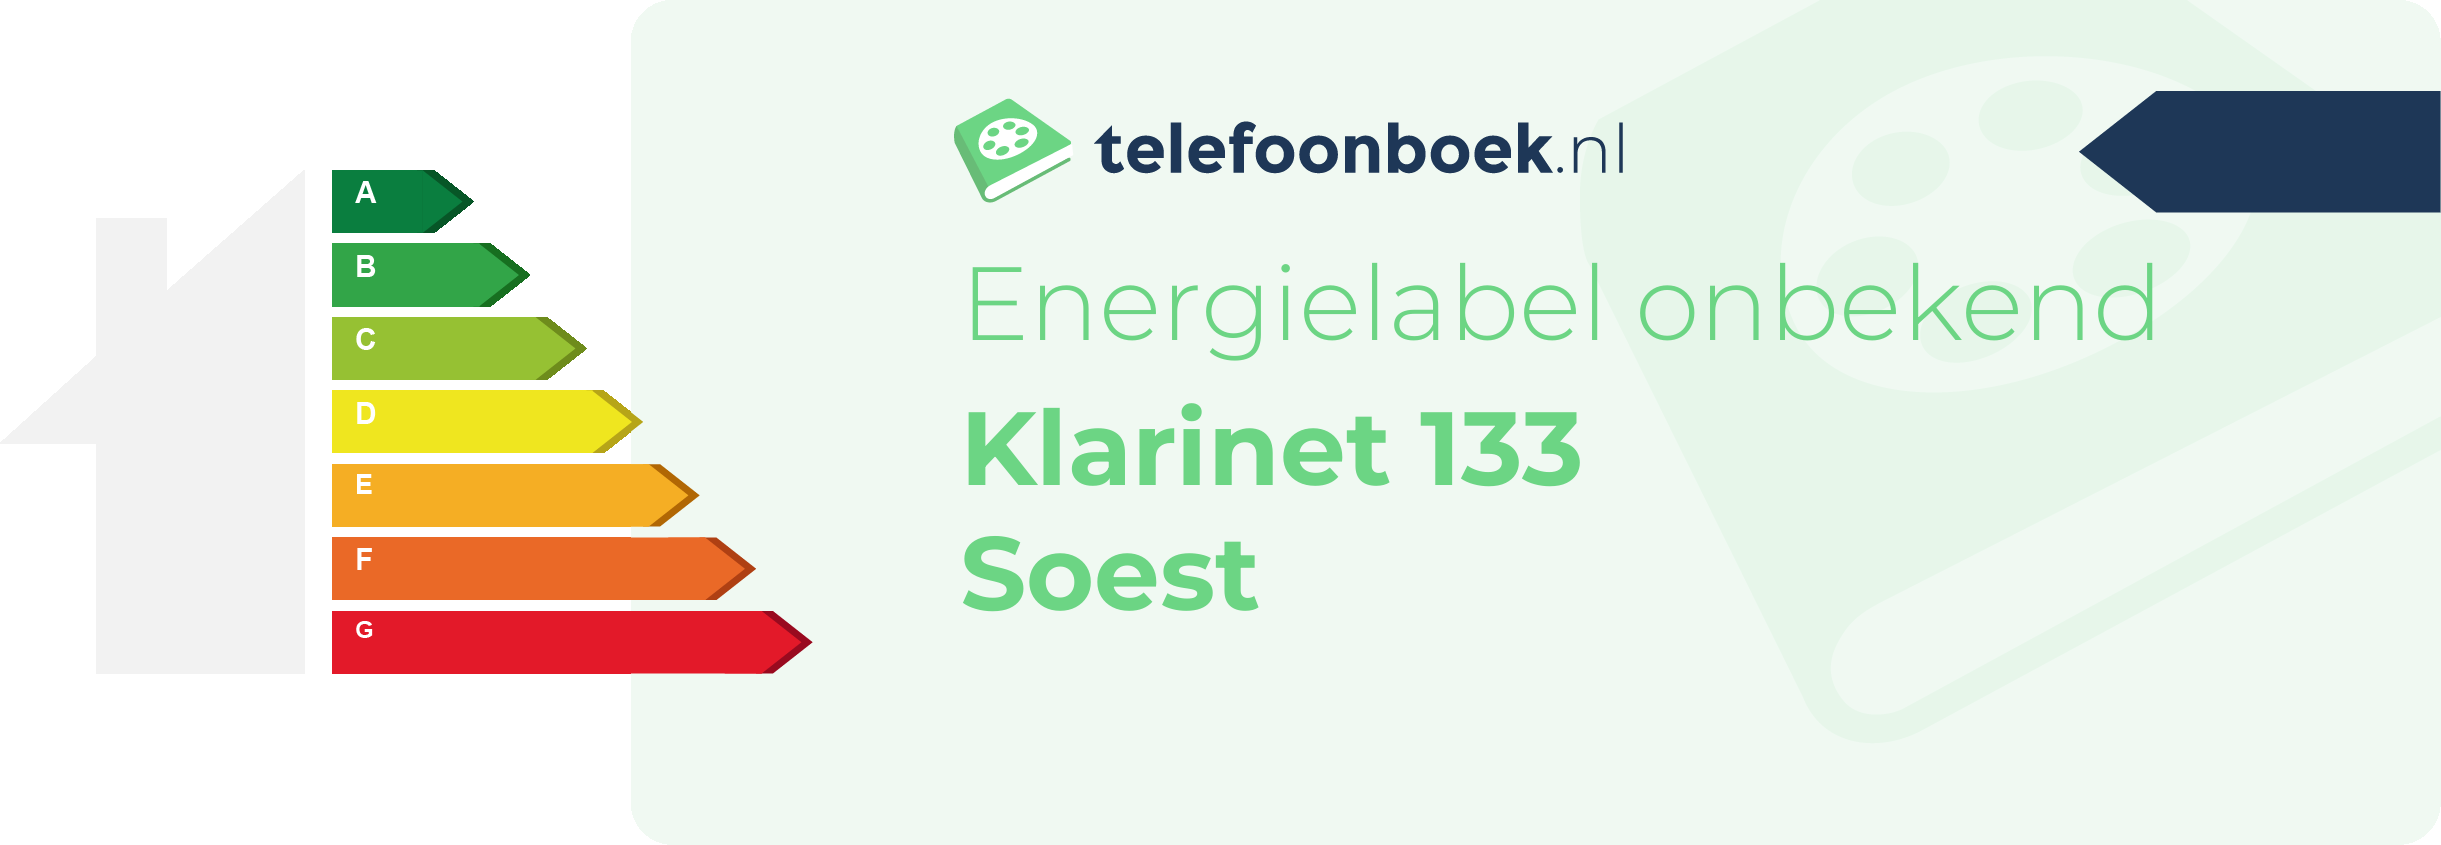 Energielabel Klarinet 133 Soest